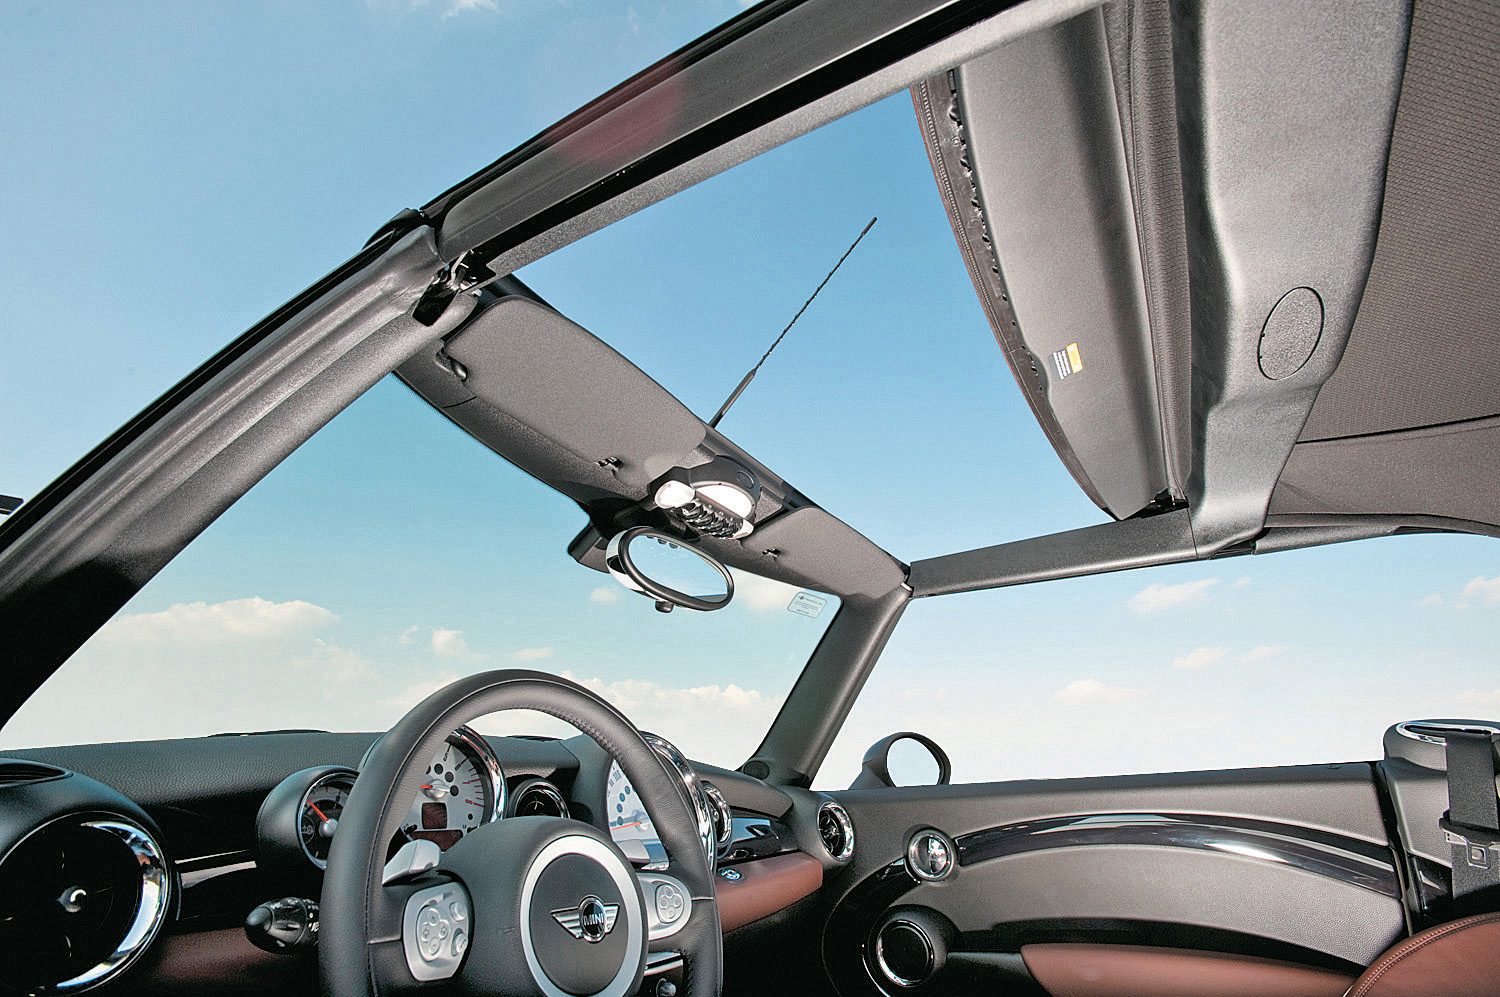 Teto-solar-do-Mini-Cooper-S-Cabrio-modelo-2010-da-BMW-testado-pela-revista-Qu-e1590591792130.jpg